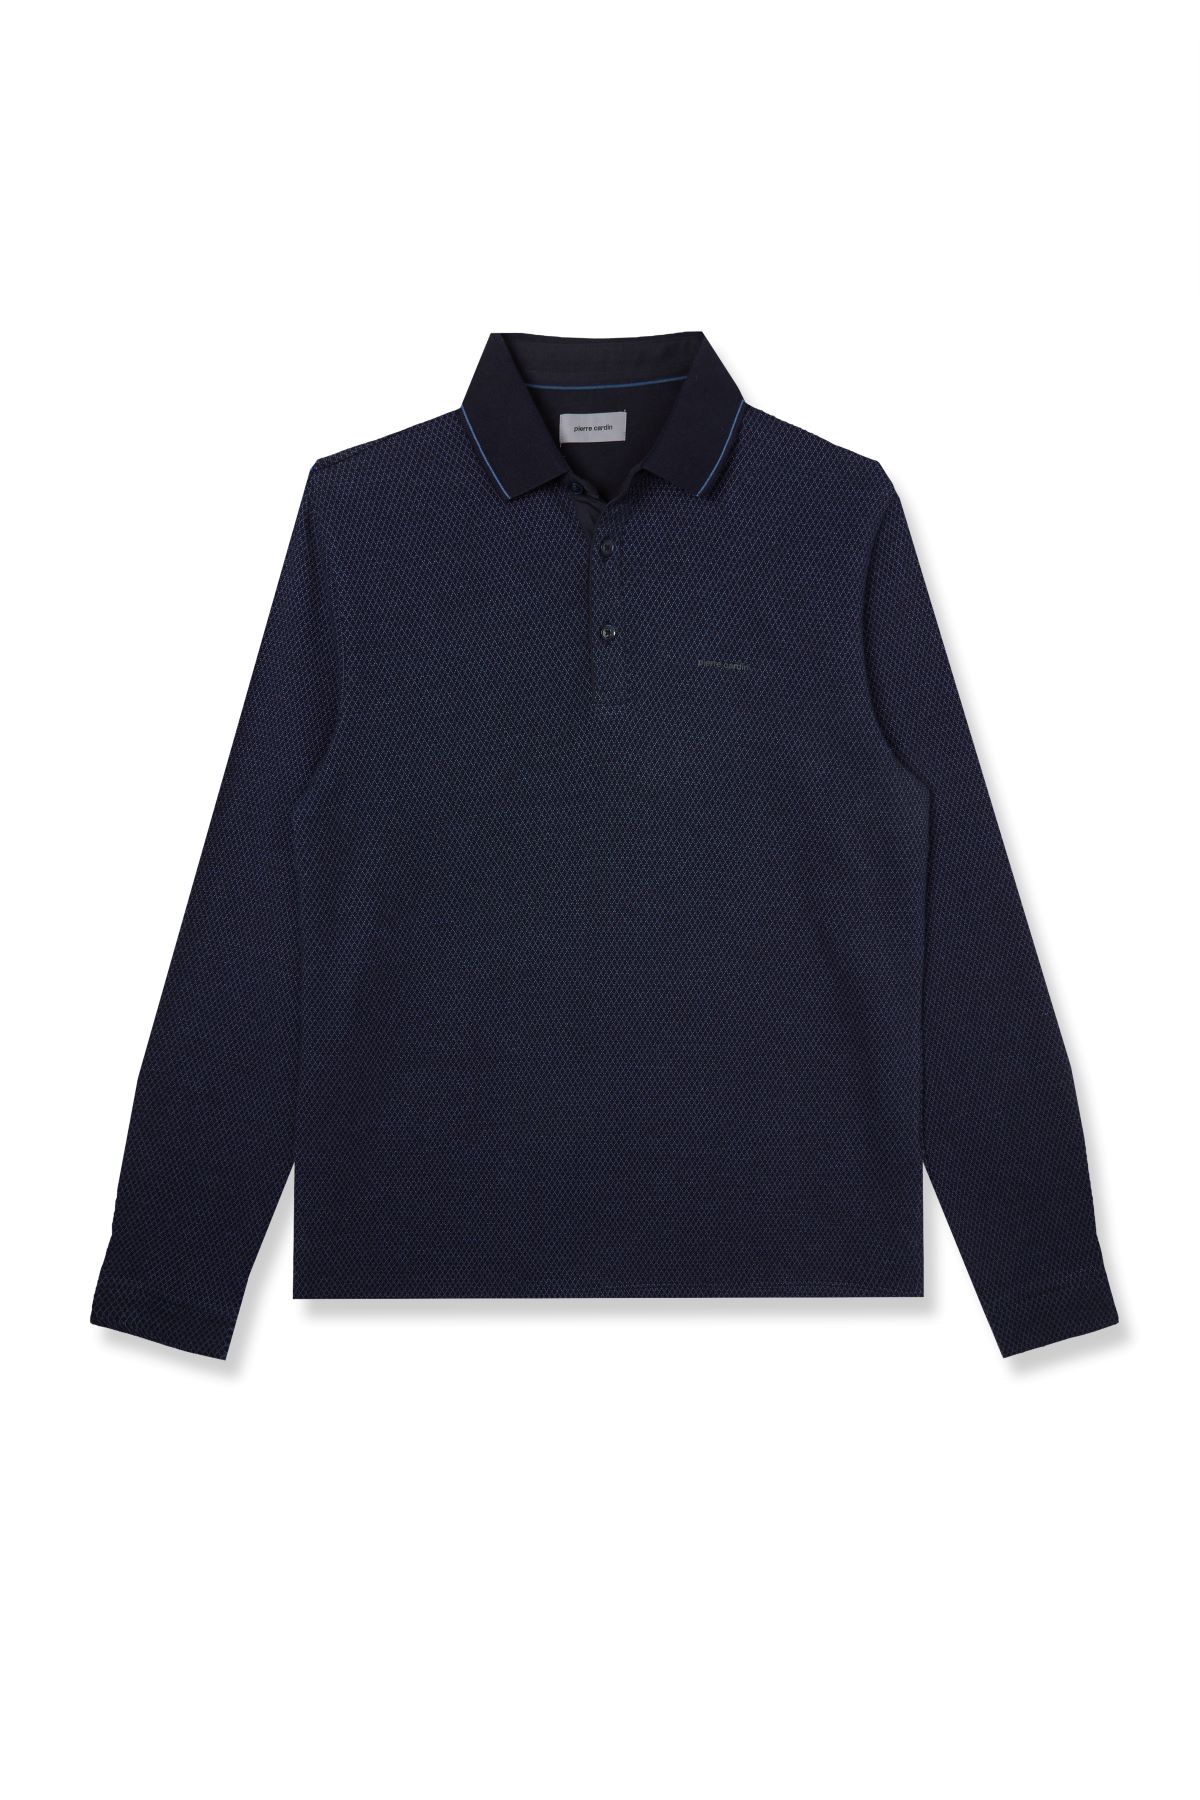 Pierre Cardin pánské triko s dlouhým rukávem a límečkem 30324.3027 6124 Modrá XL